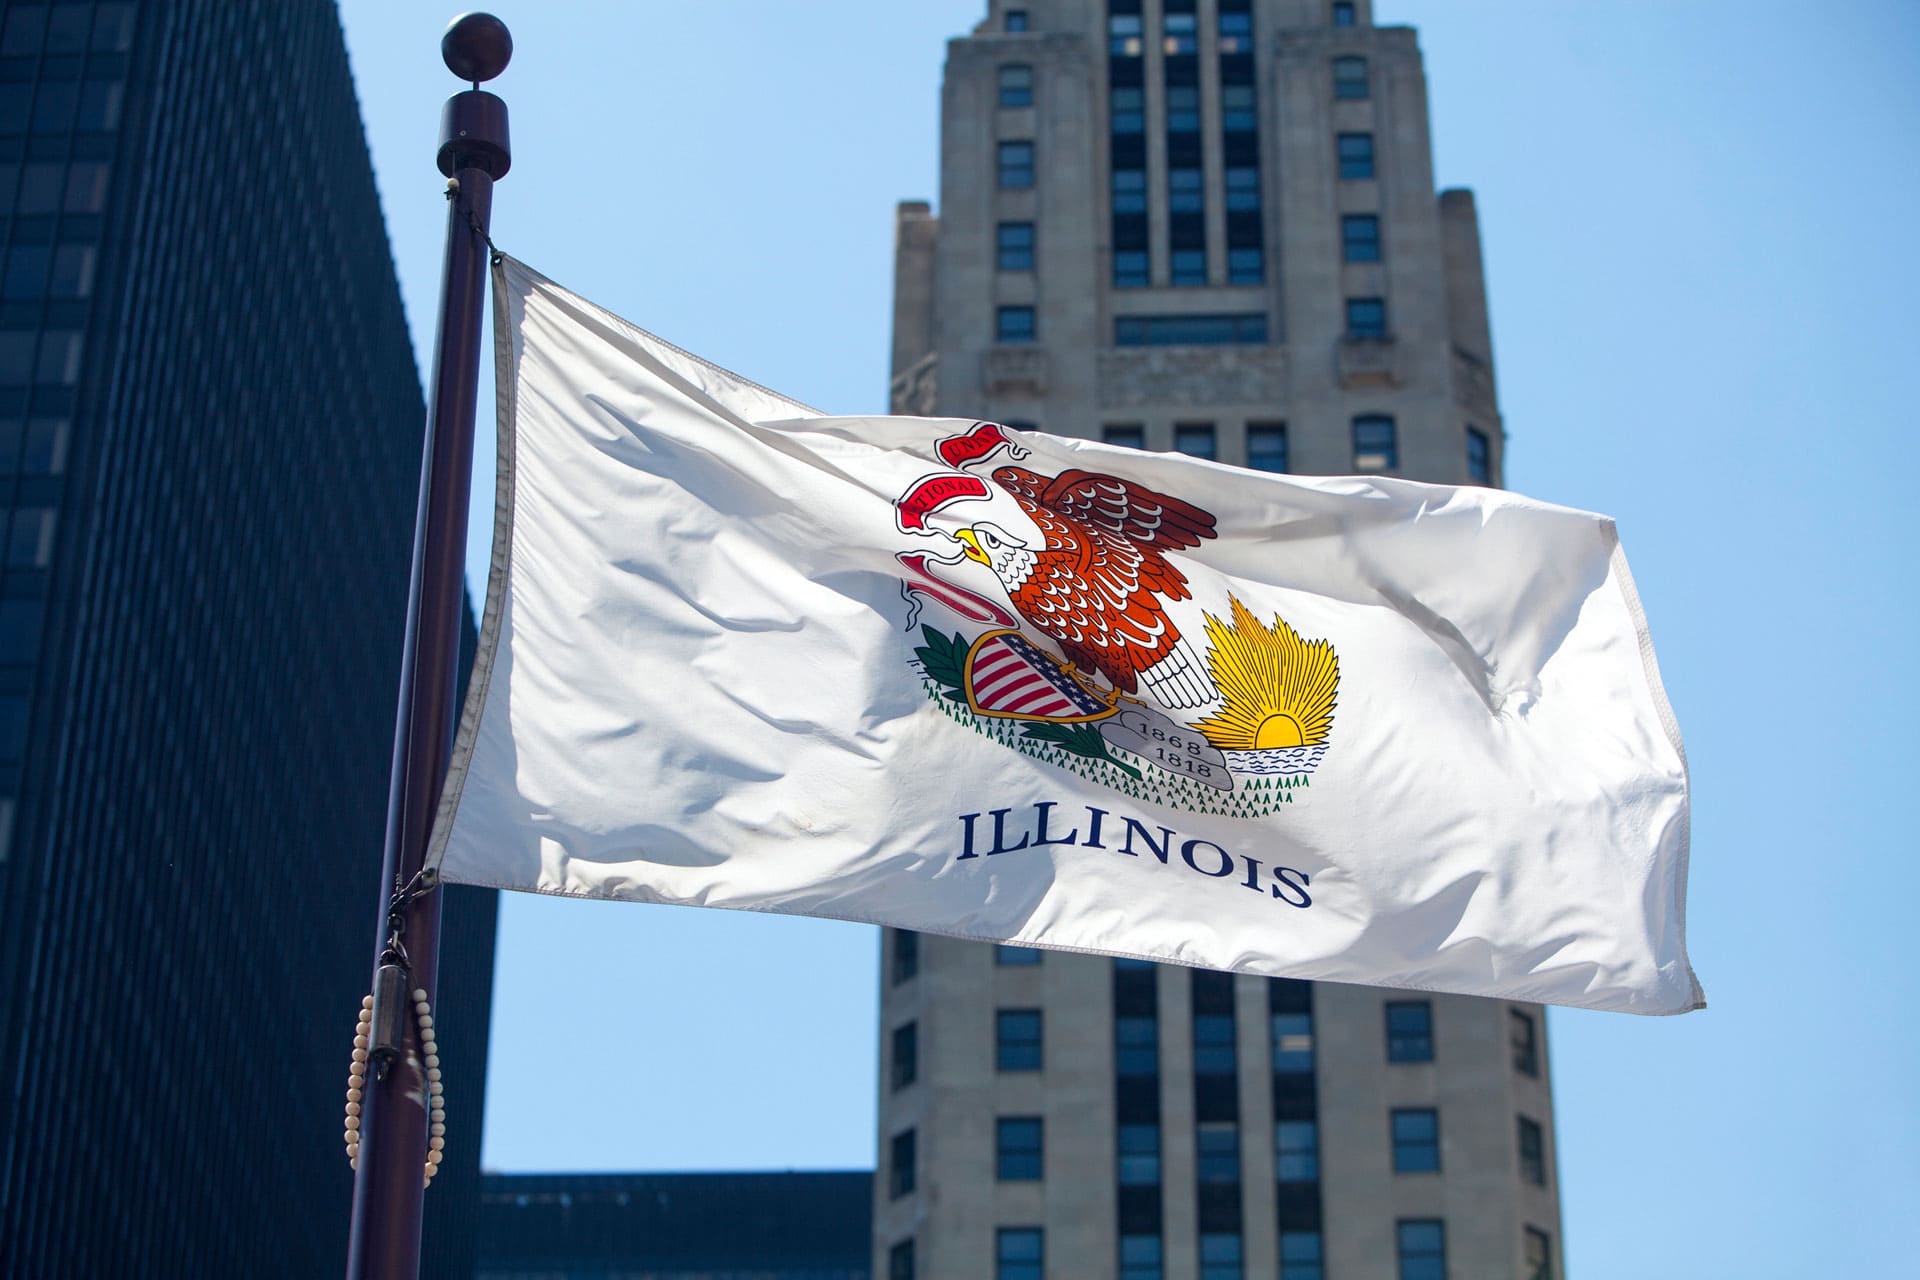 Illinois-flag_detail